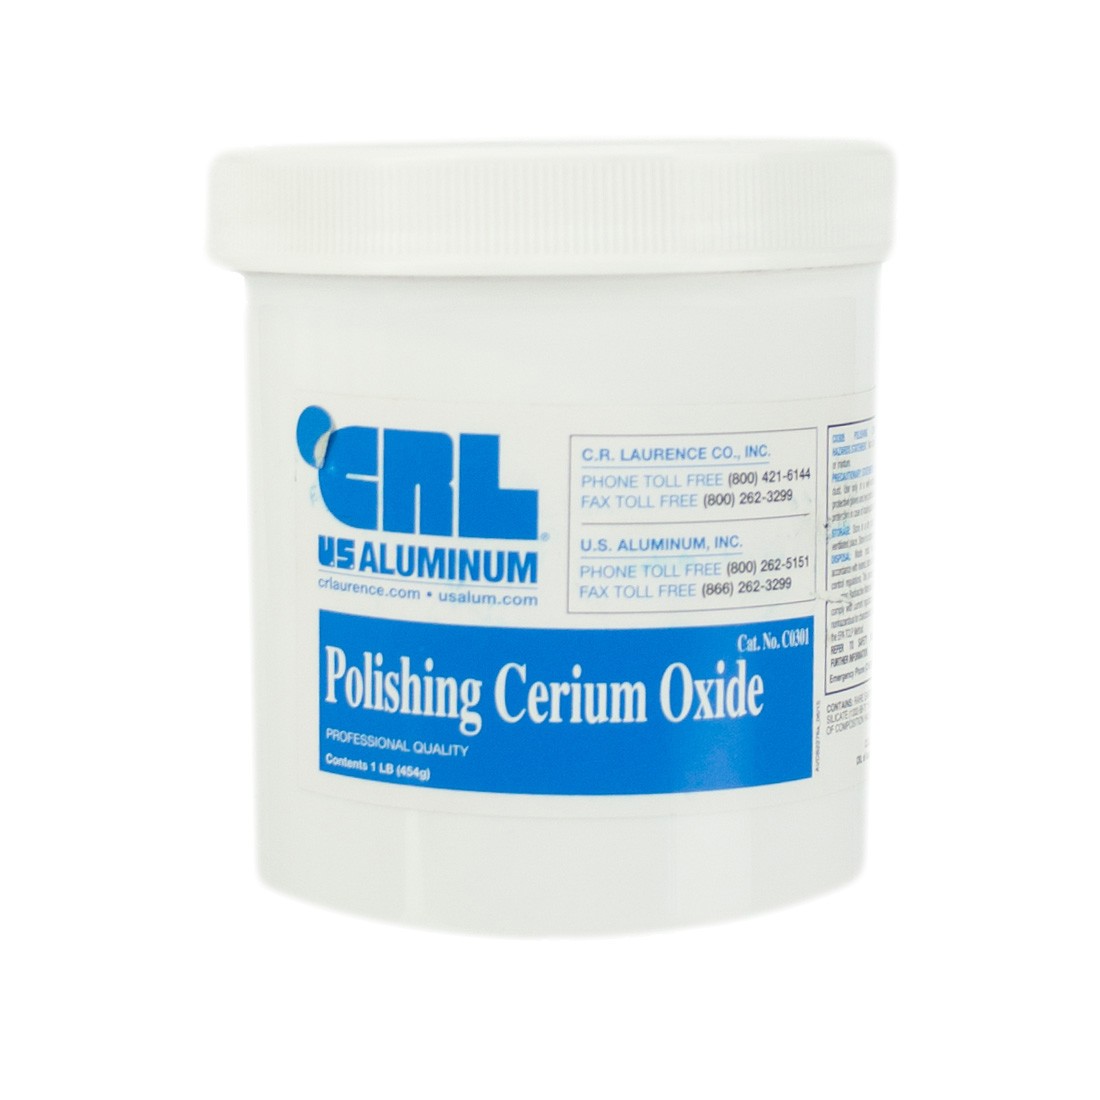 Cerium Oxide Polish